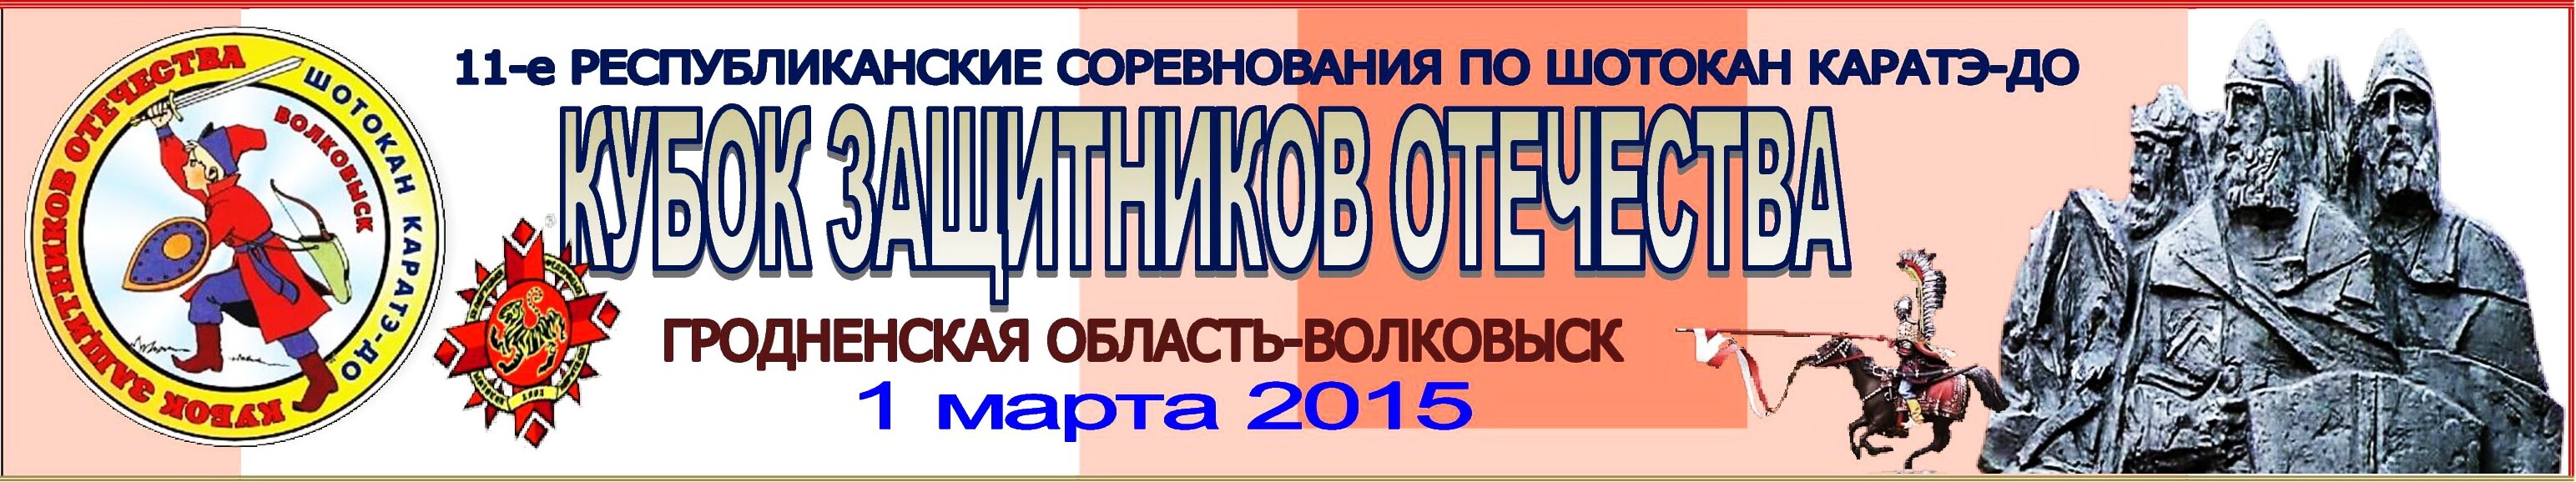 Волковыск-2015 Баннер''